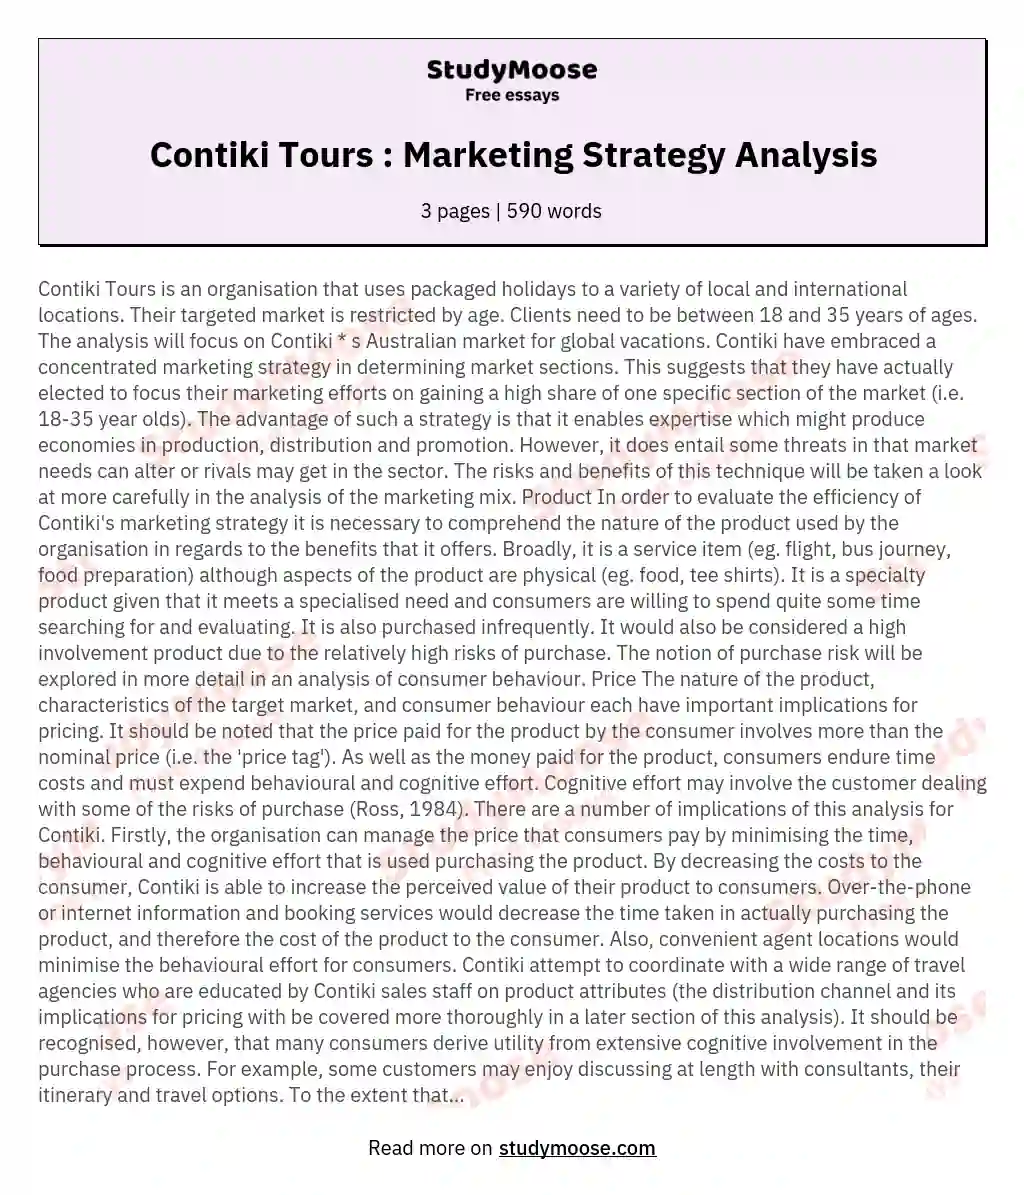 Contiki Tours : Marketing Strategy Analysis essay